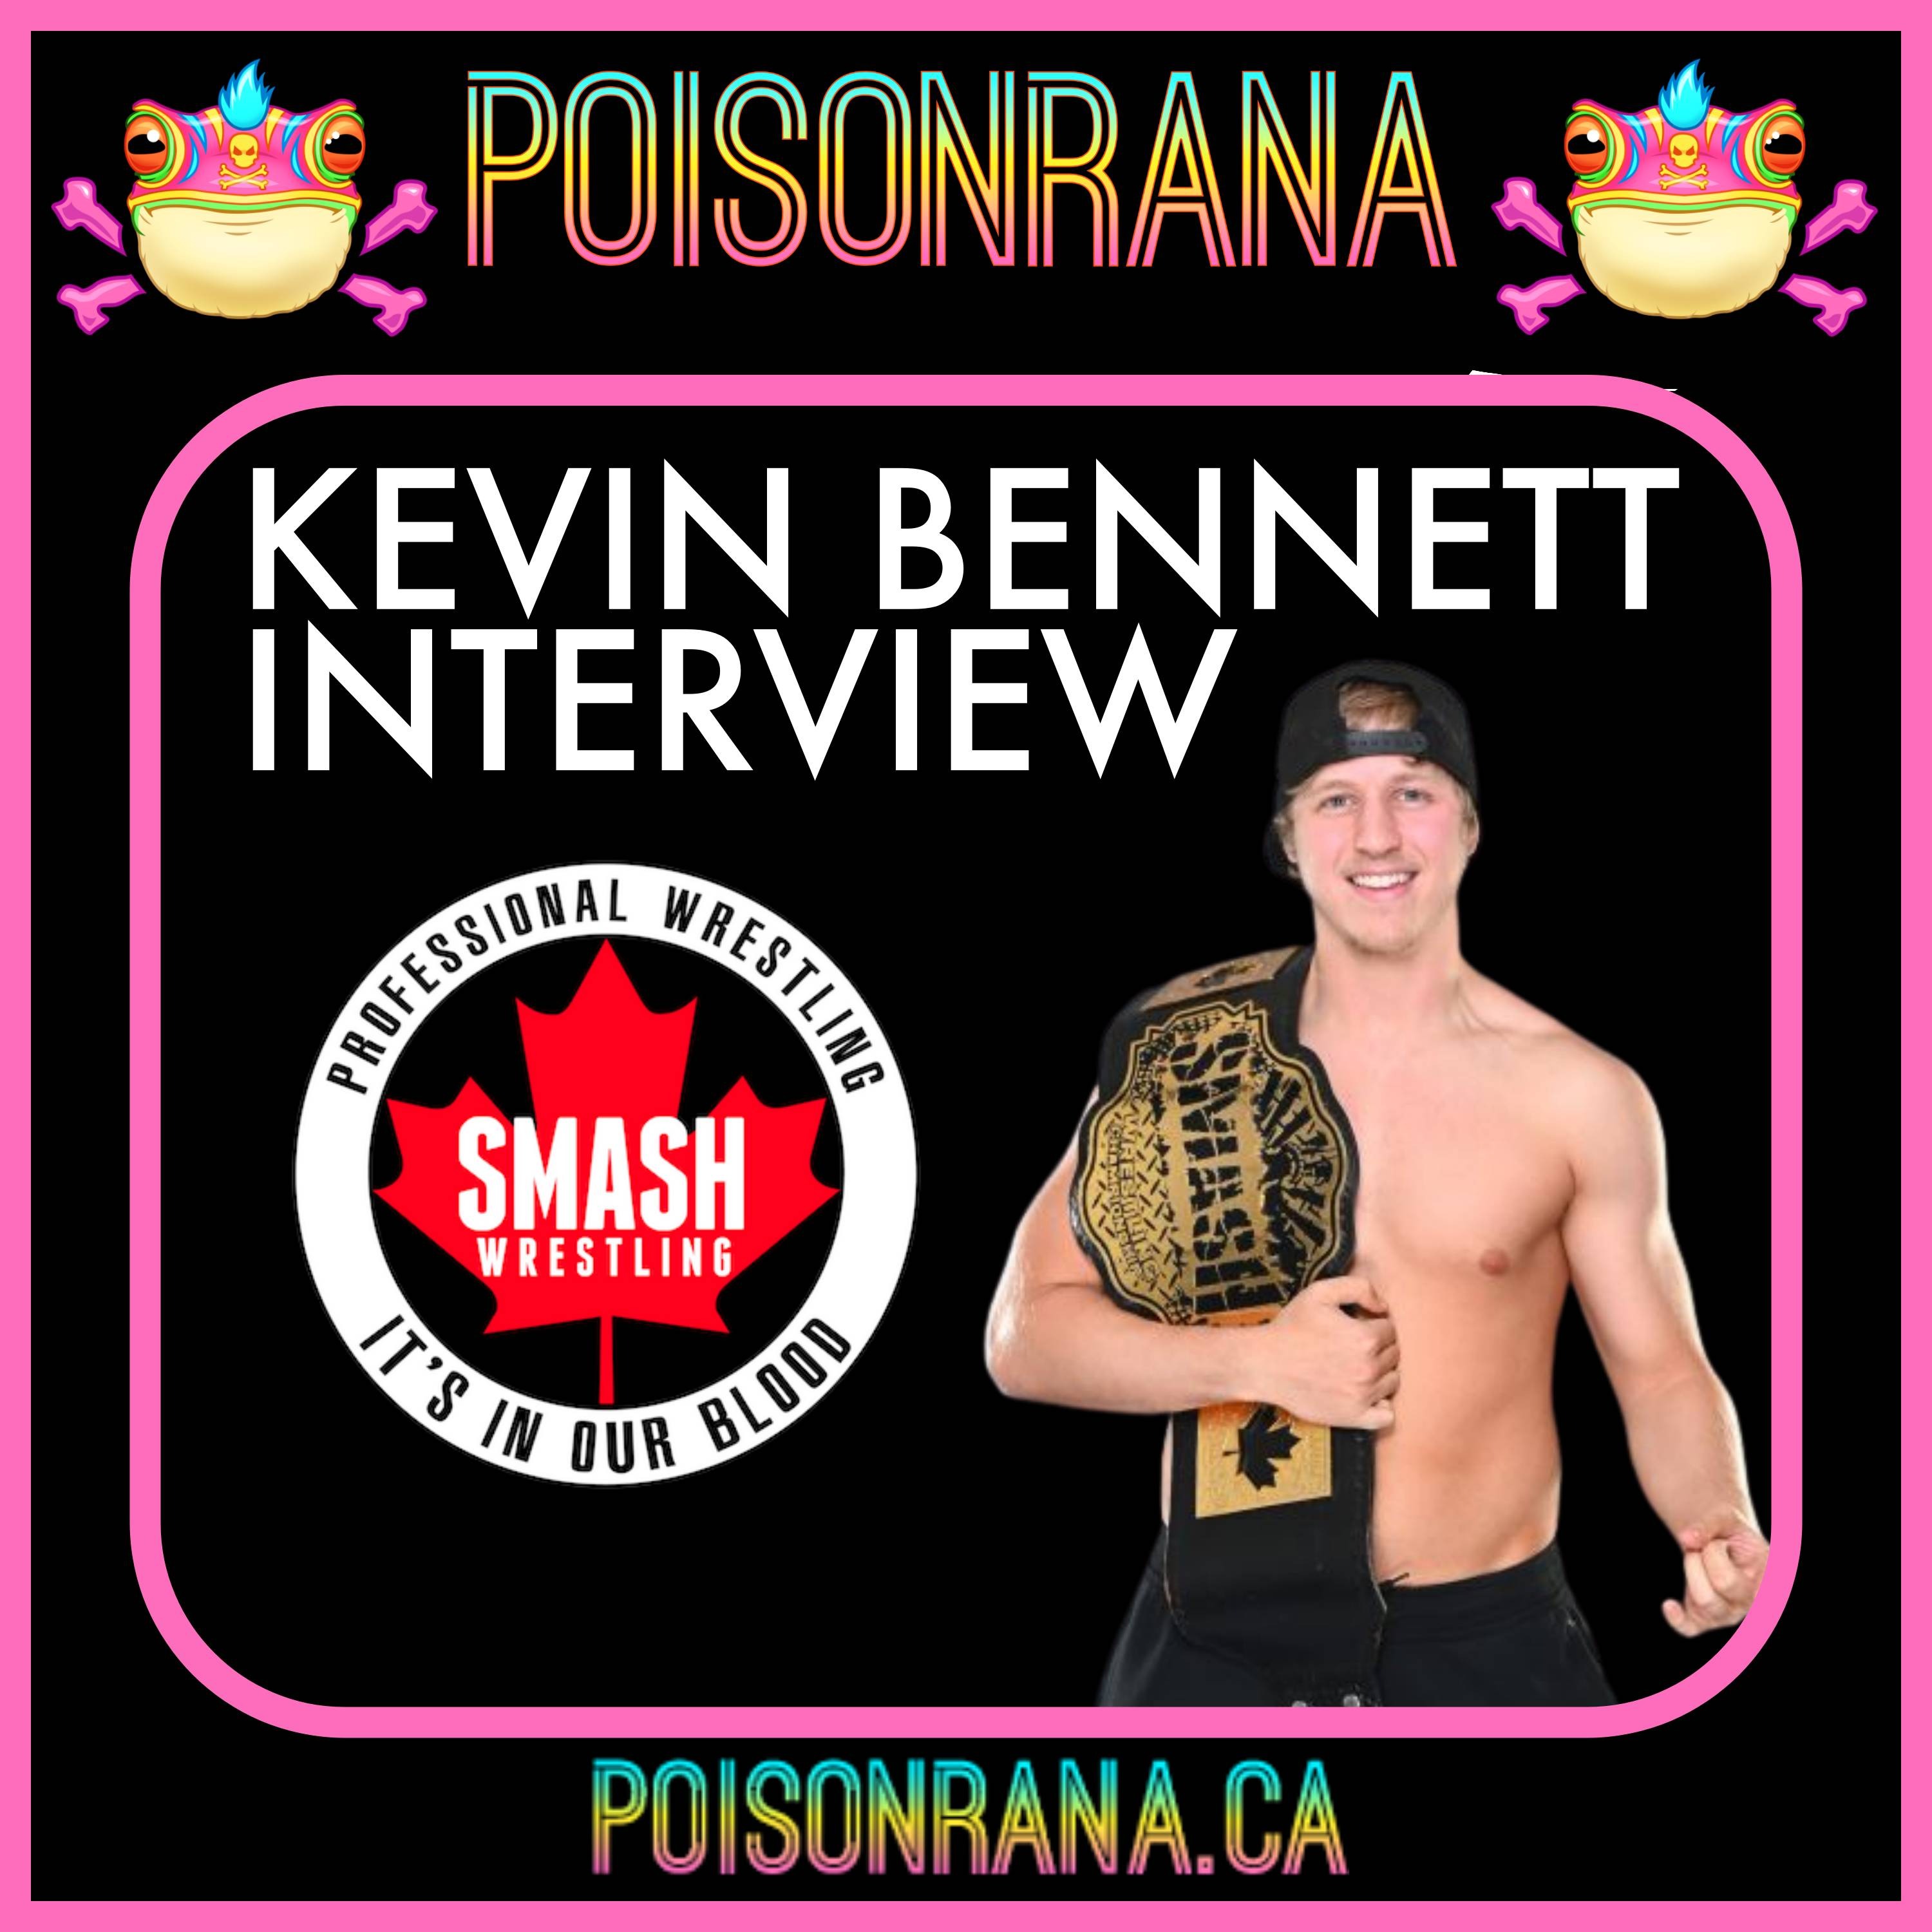 POISONRANA INTERVIEW: Kevin Bennett